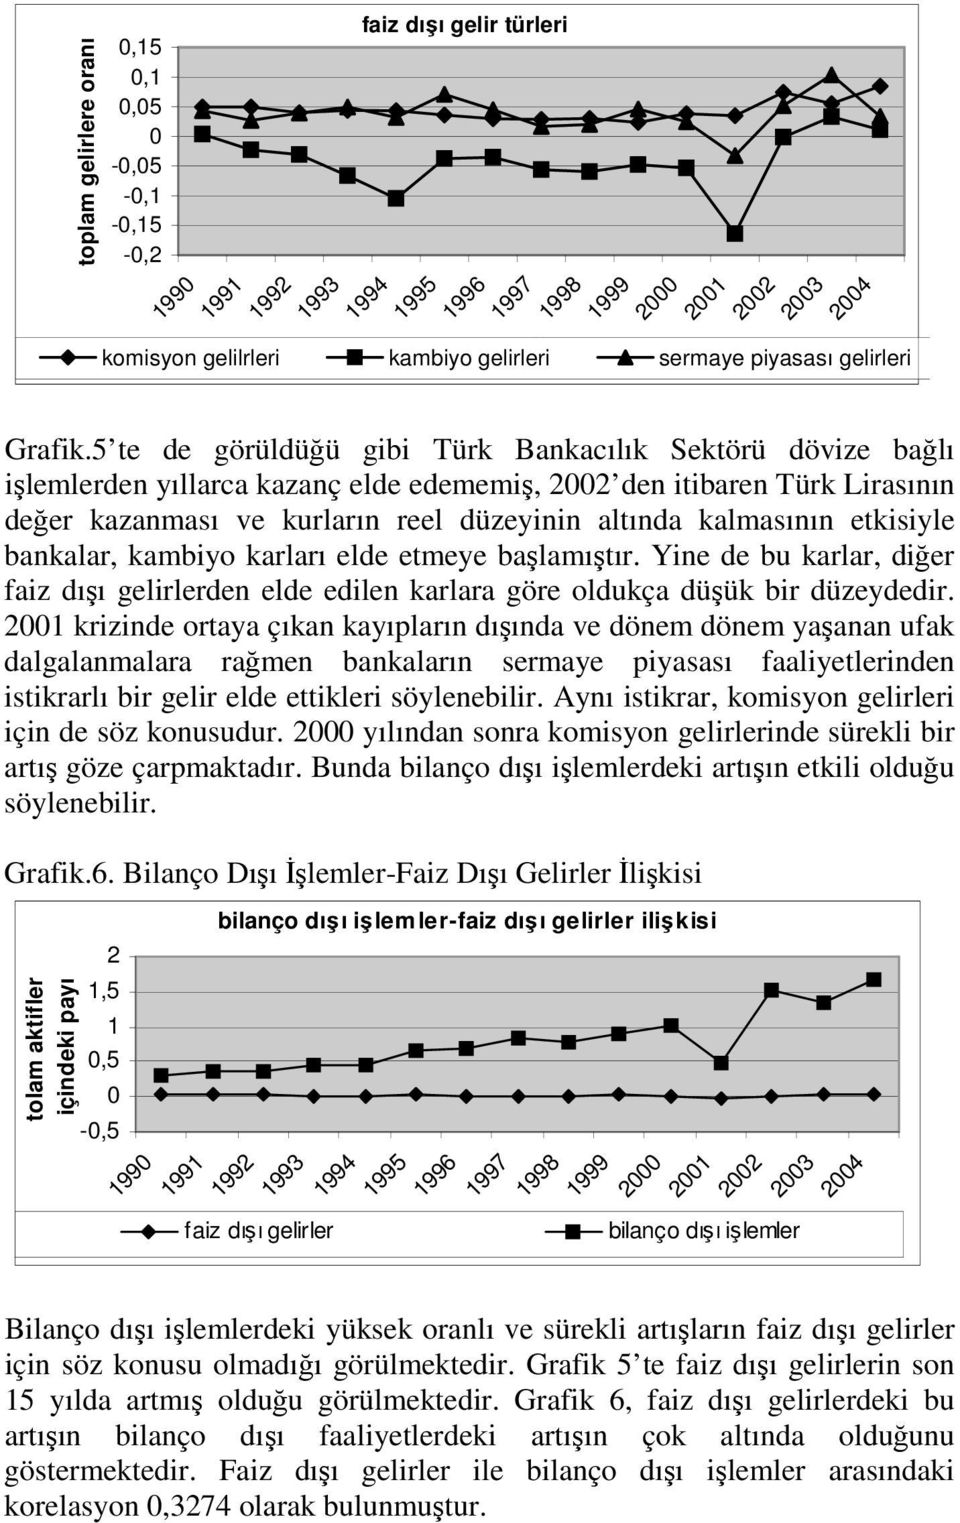 5 te de görüldüğü gibi Türk Bankacılık Sektörü dövize bağlı işlemlerden yıllarca kazanç elde edememiş, 2002 den itibaren Türk Lirasının değer kazanması ve kurların reel düzeyinin altında kalmasının